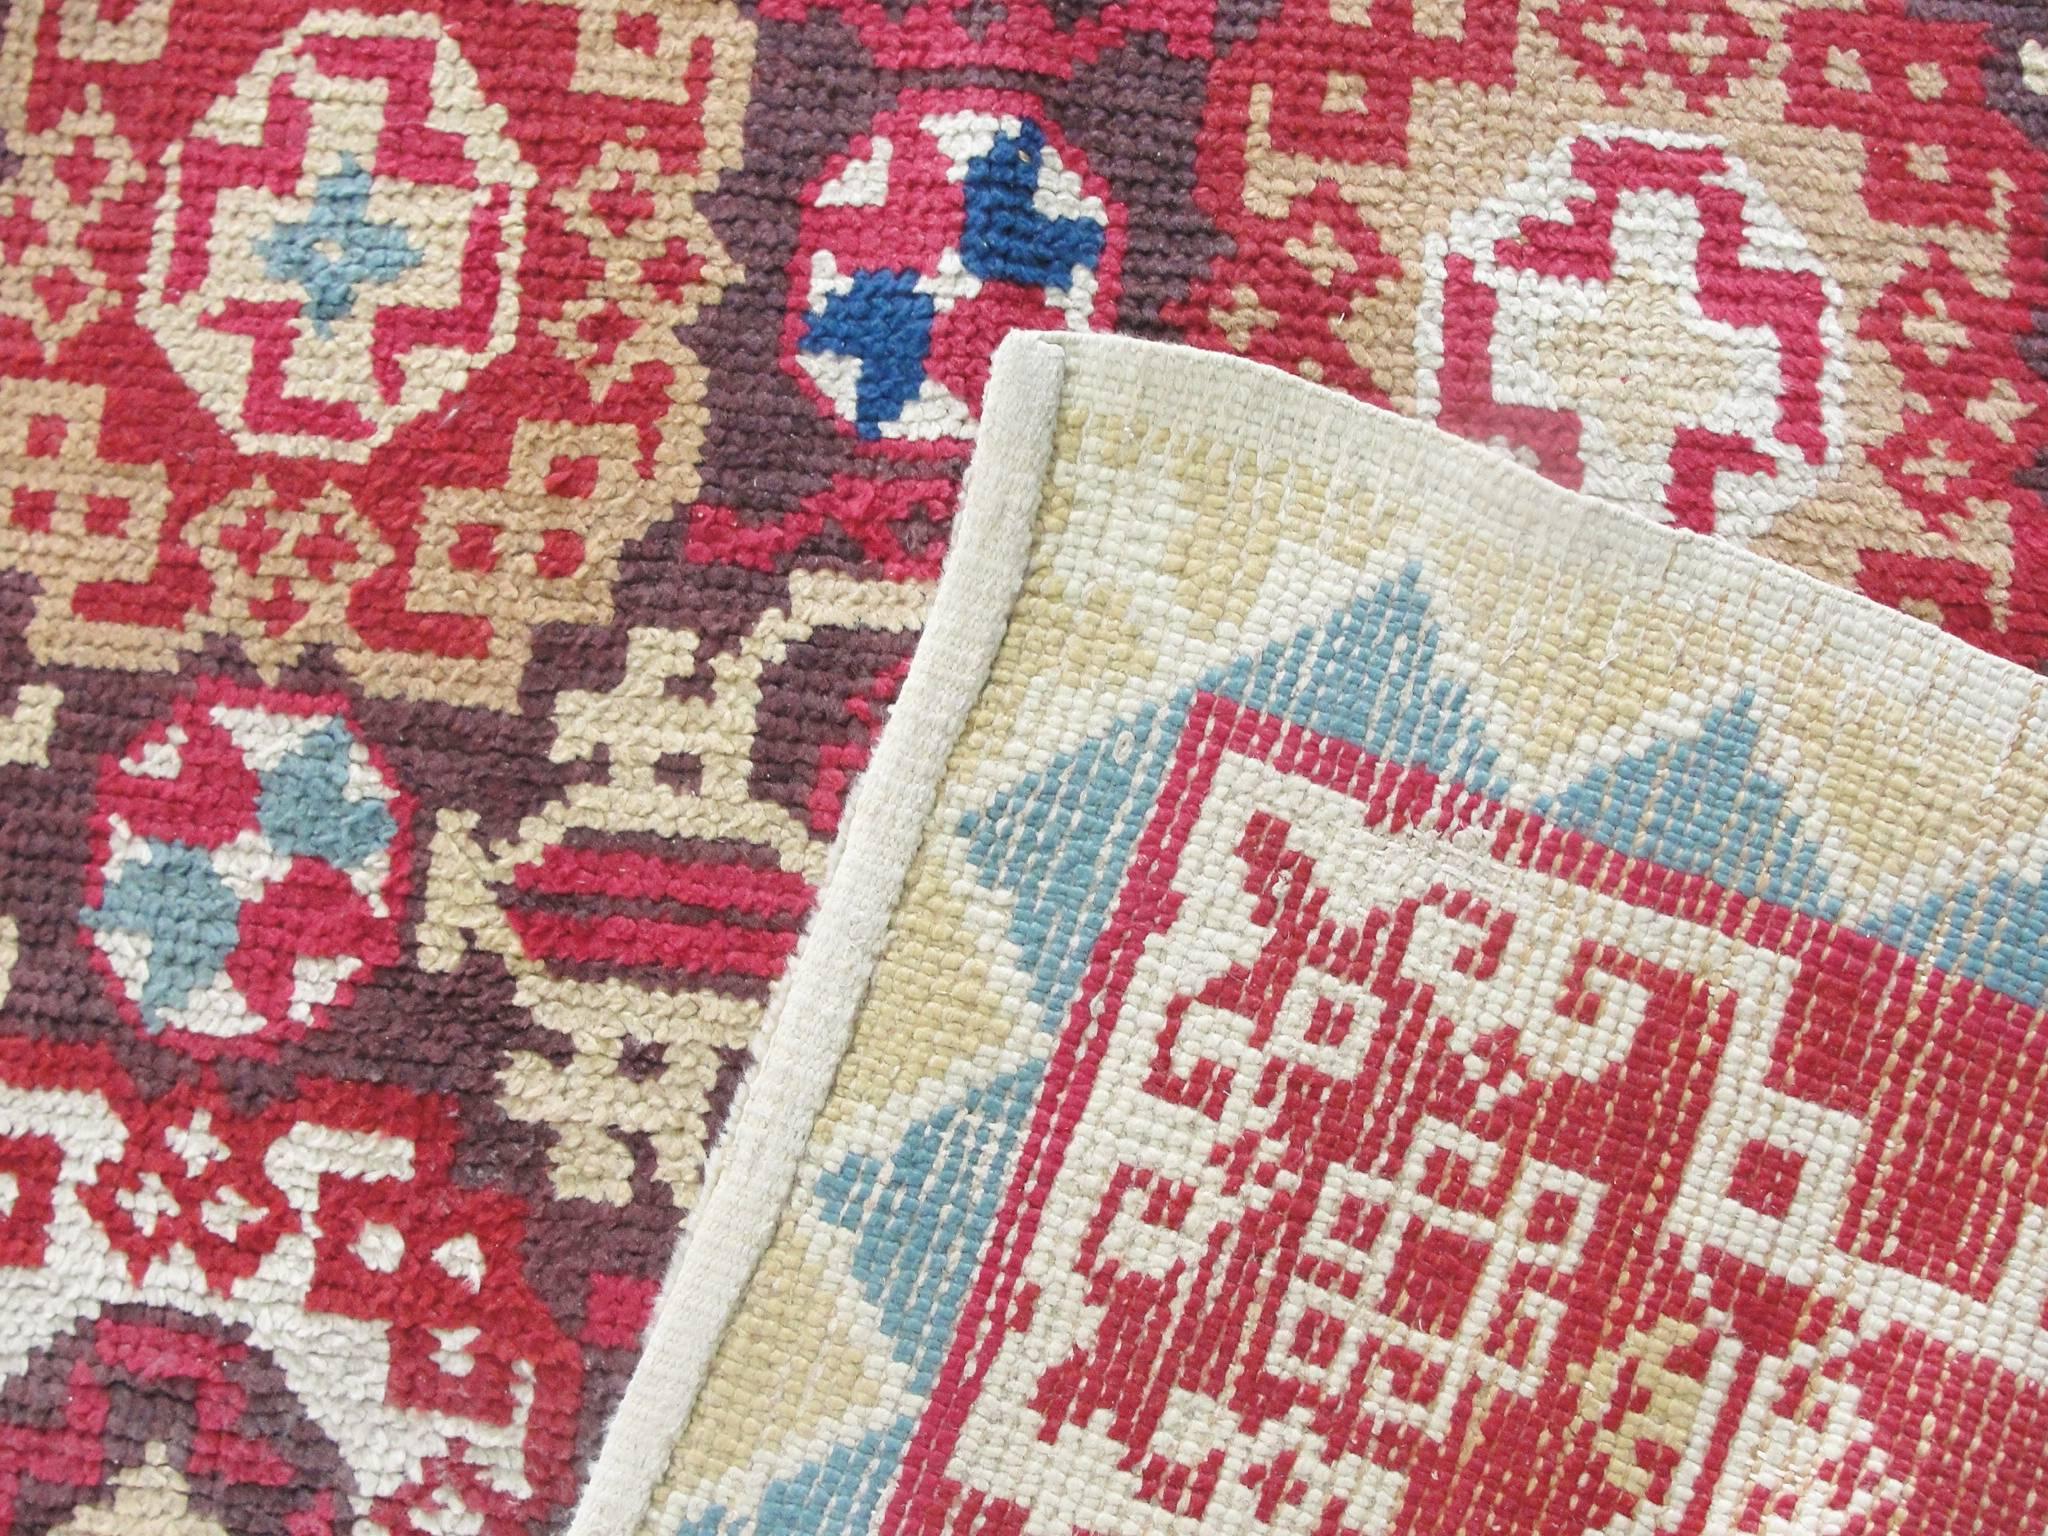 Die wichtigsten Zentren für die Herstellung englischer Teppiche befanden sich in Axminster, Wilton und Kidderminster. Zu den charakteristischen Mustern dieser antiken Teppiche gehören tiefe goldene Farben und asymmetrische Designs.

Dieser